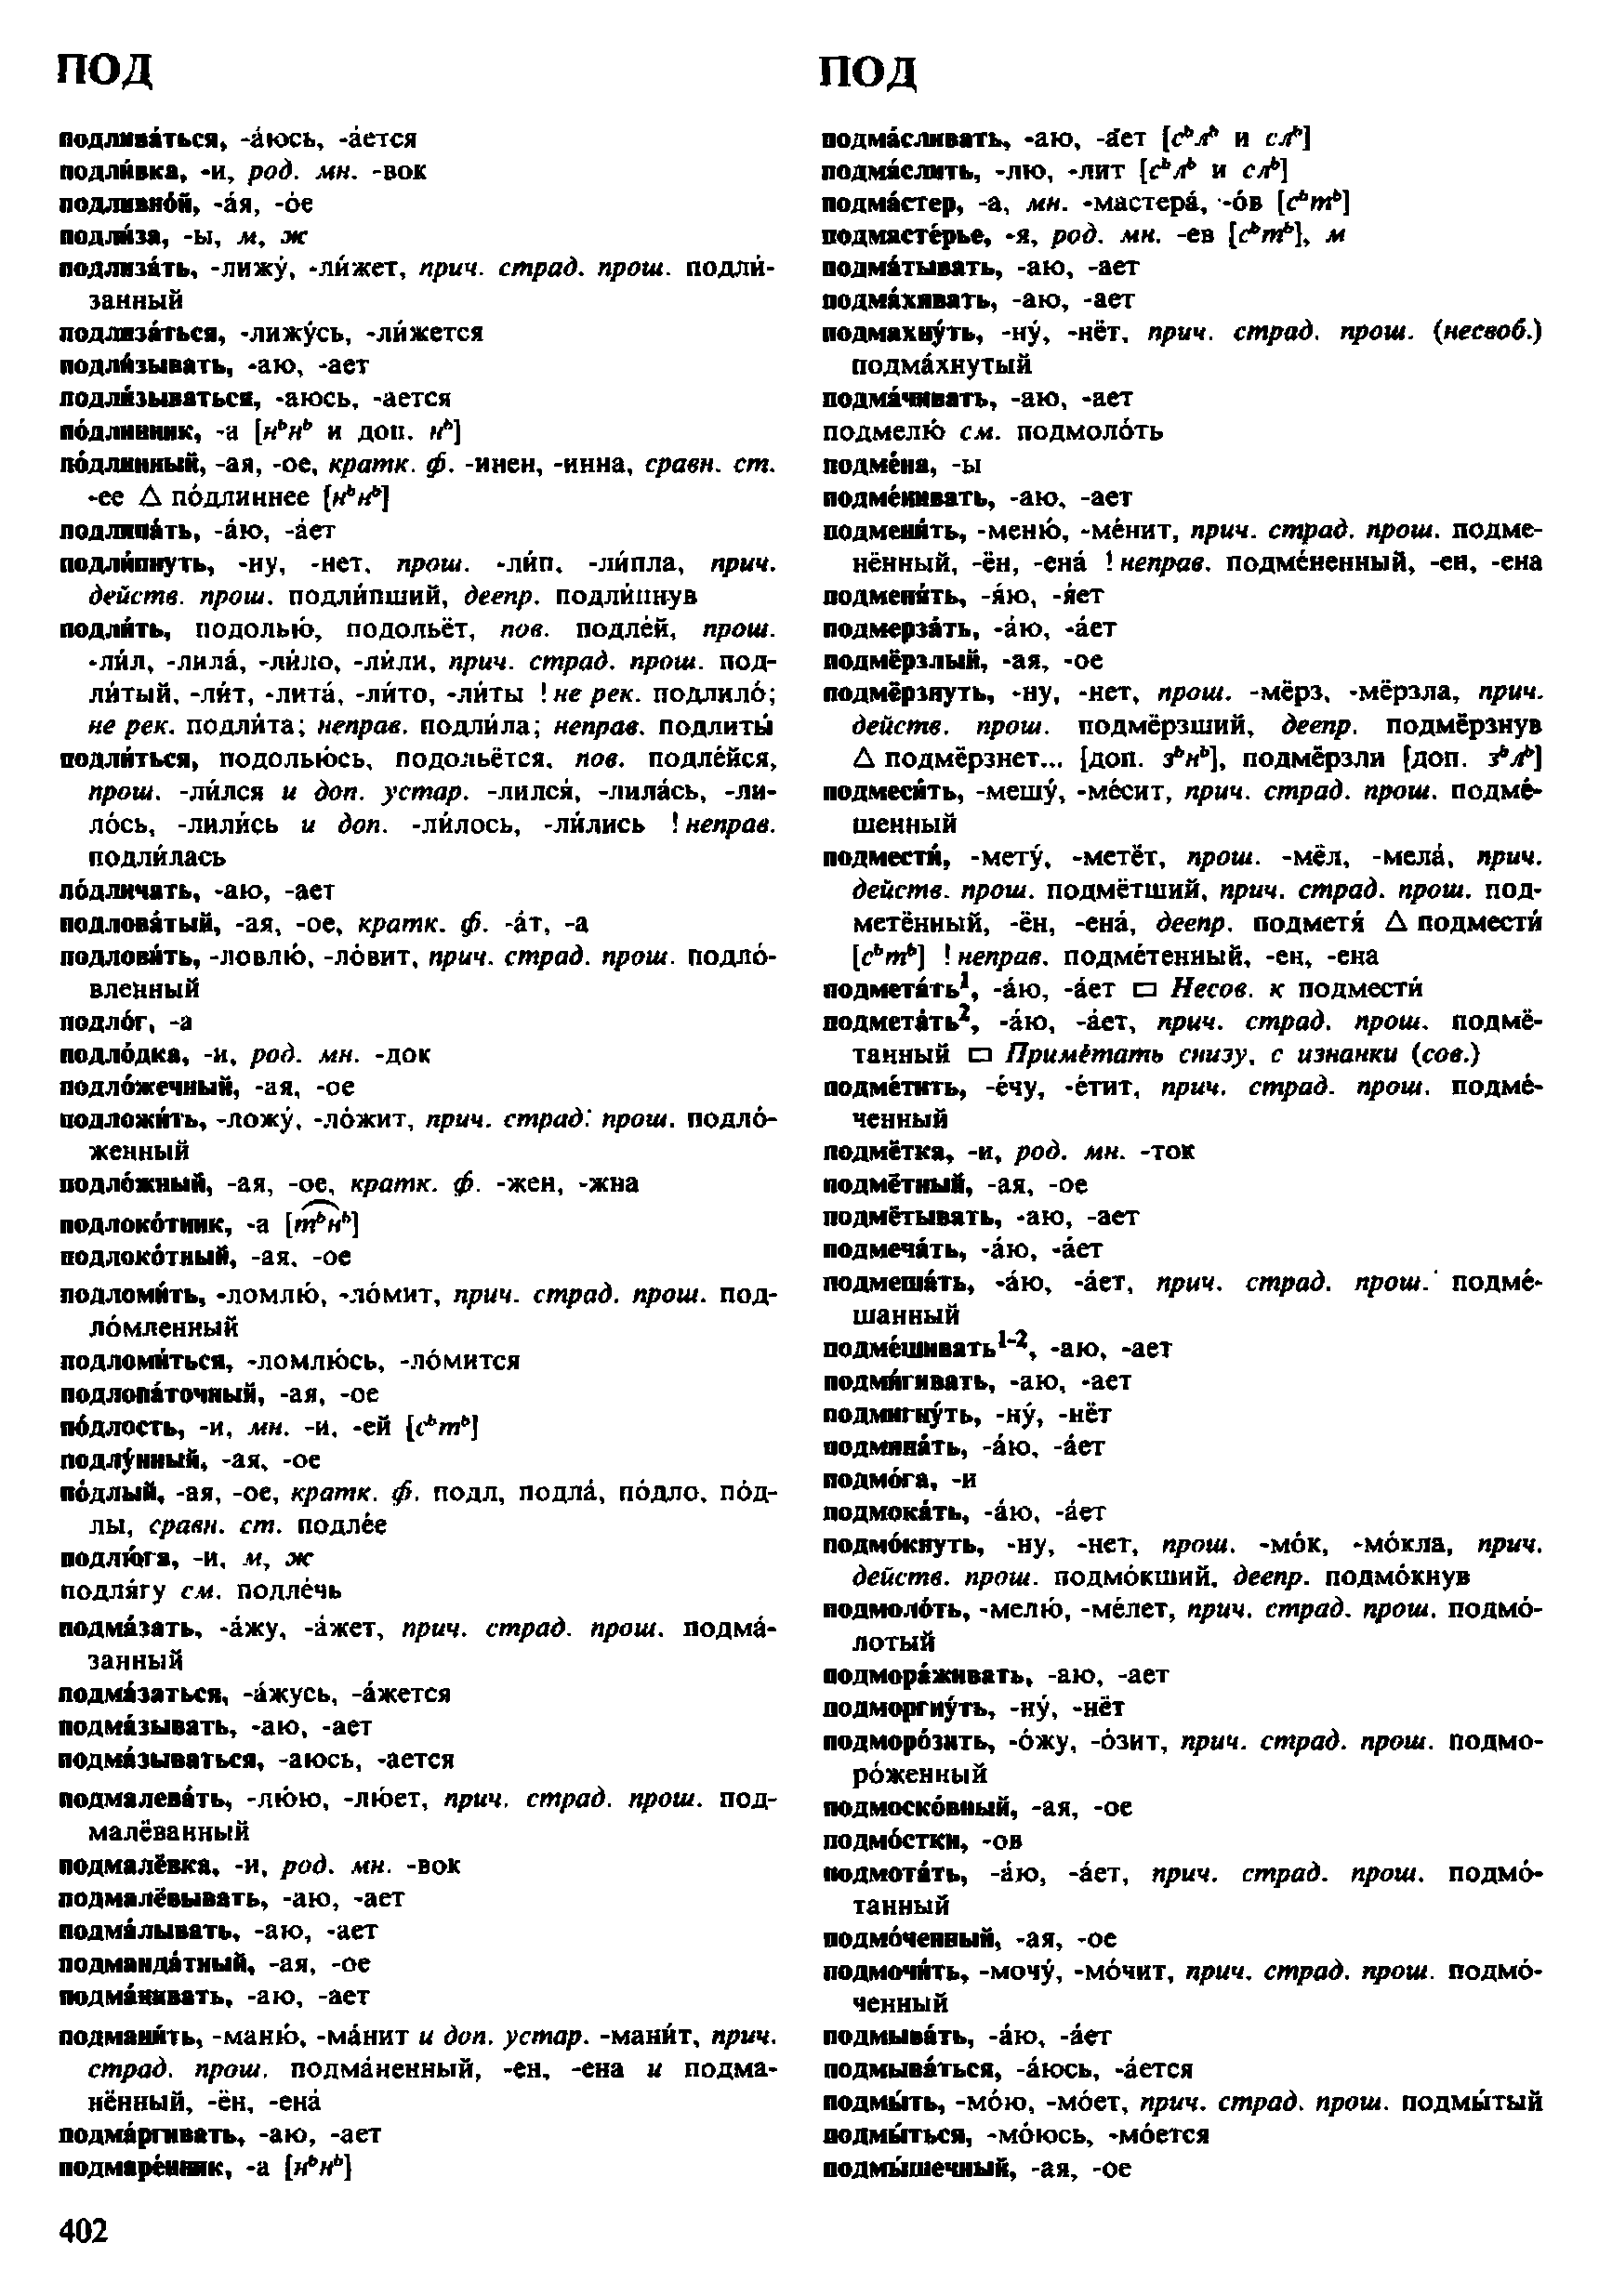 Фотокопия pdf / скан страницы 402 орфоэпического словаря под редакцией Аванесова (4 издание, 1988 год)